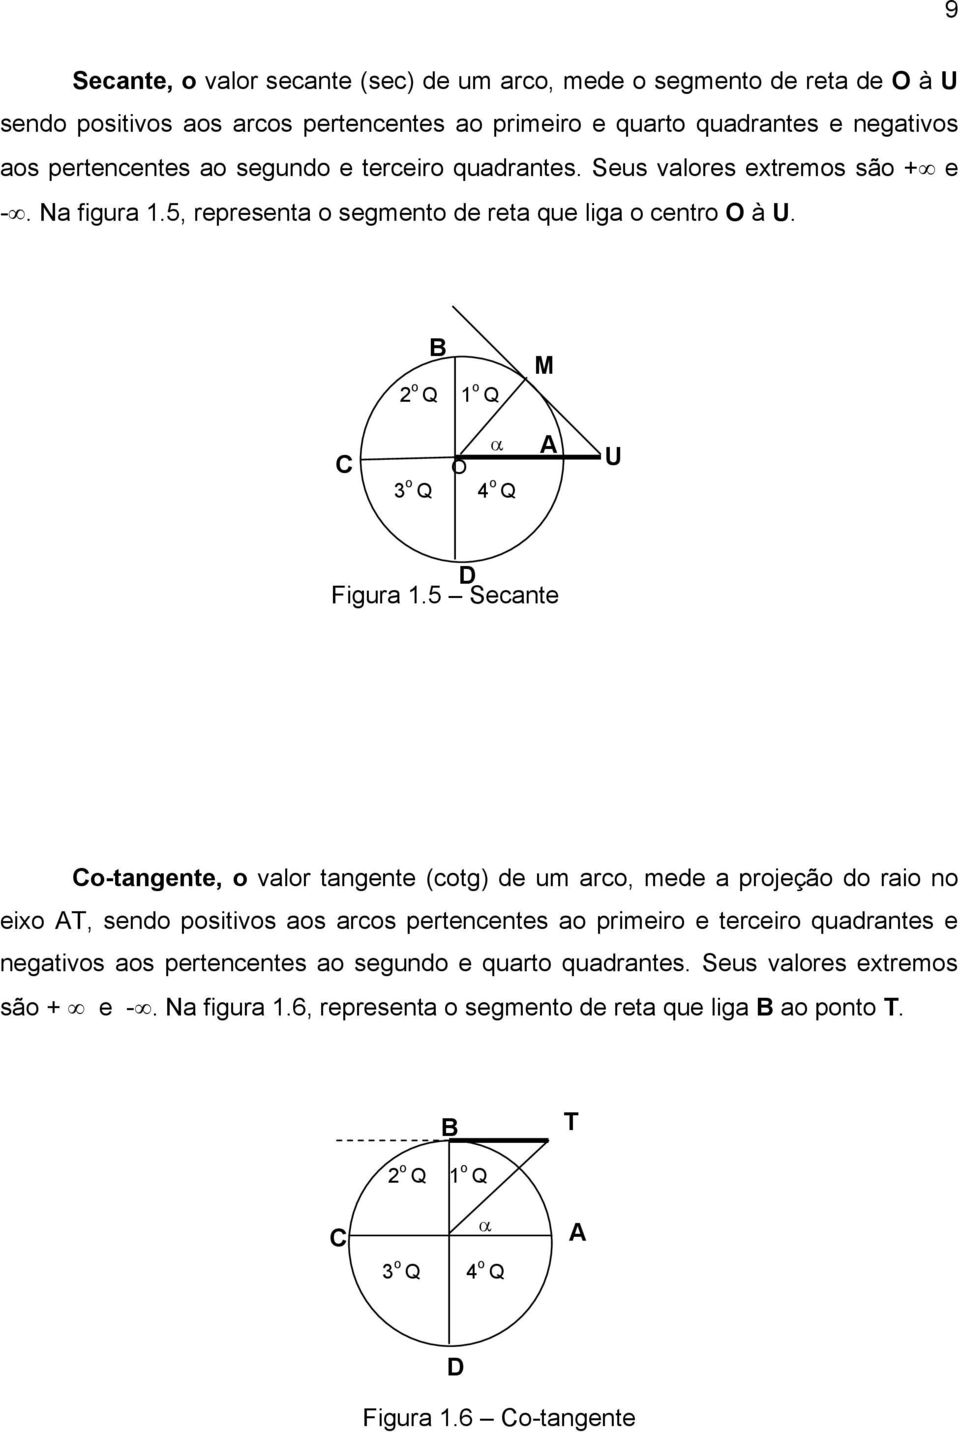 5 Secante Co-tangente, o valor tangente (cotg) de um arco, mede a projeção do raio no eixo T, do positivos aos ar pertencentes ao primeiro e terceiro quadrantes e negativos aos